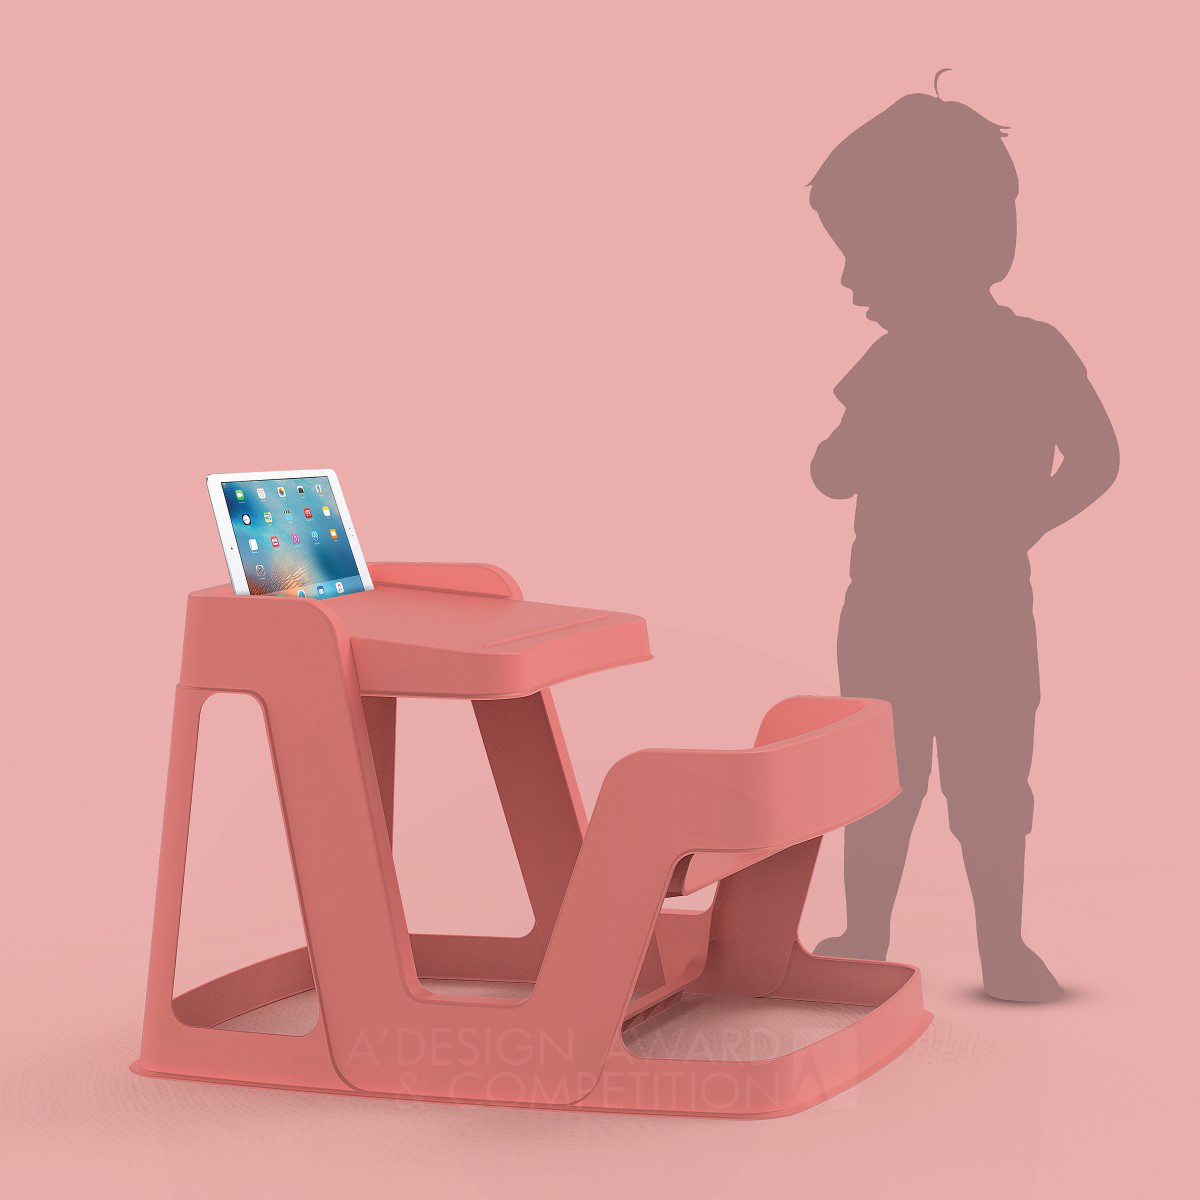 voeden Overstijgen Boekwinkel Paradiso First Desk Baby Desk for Creative Development by David Dos Santos  - BEST DESIGN BELGIUM